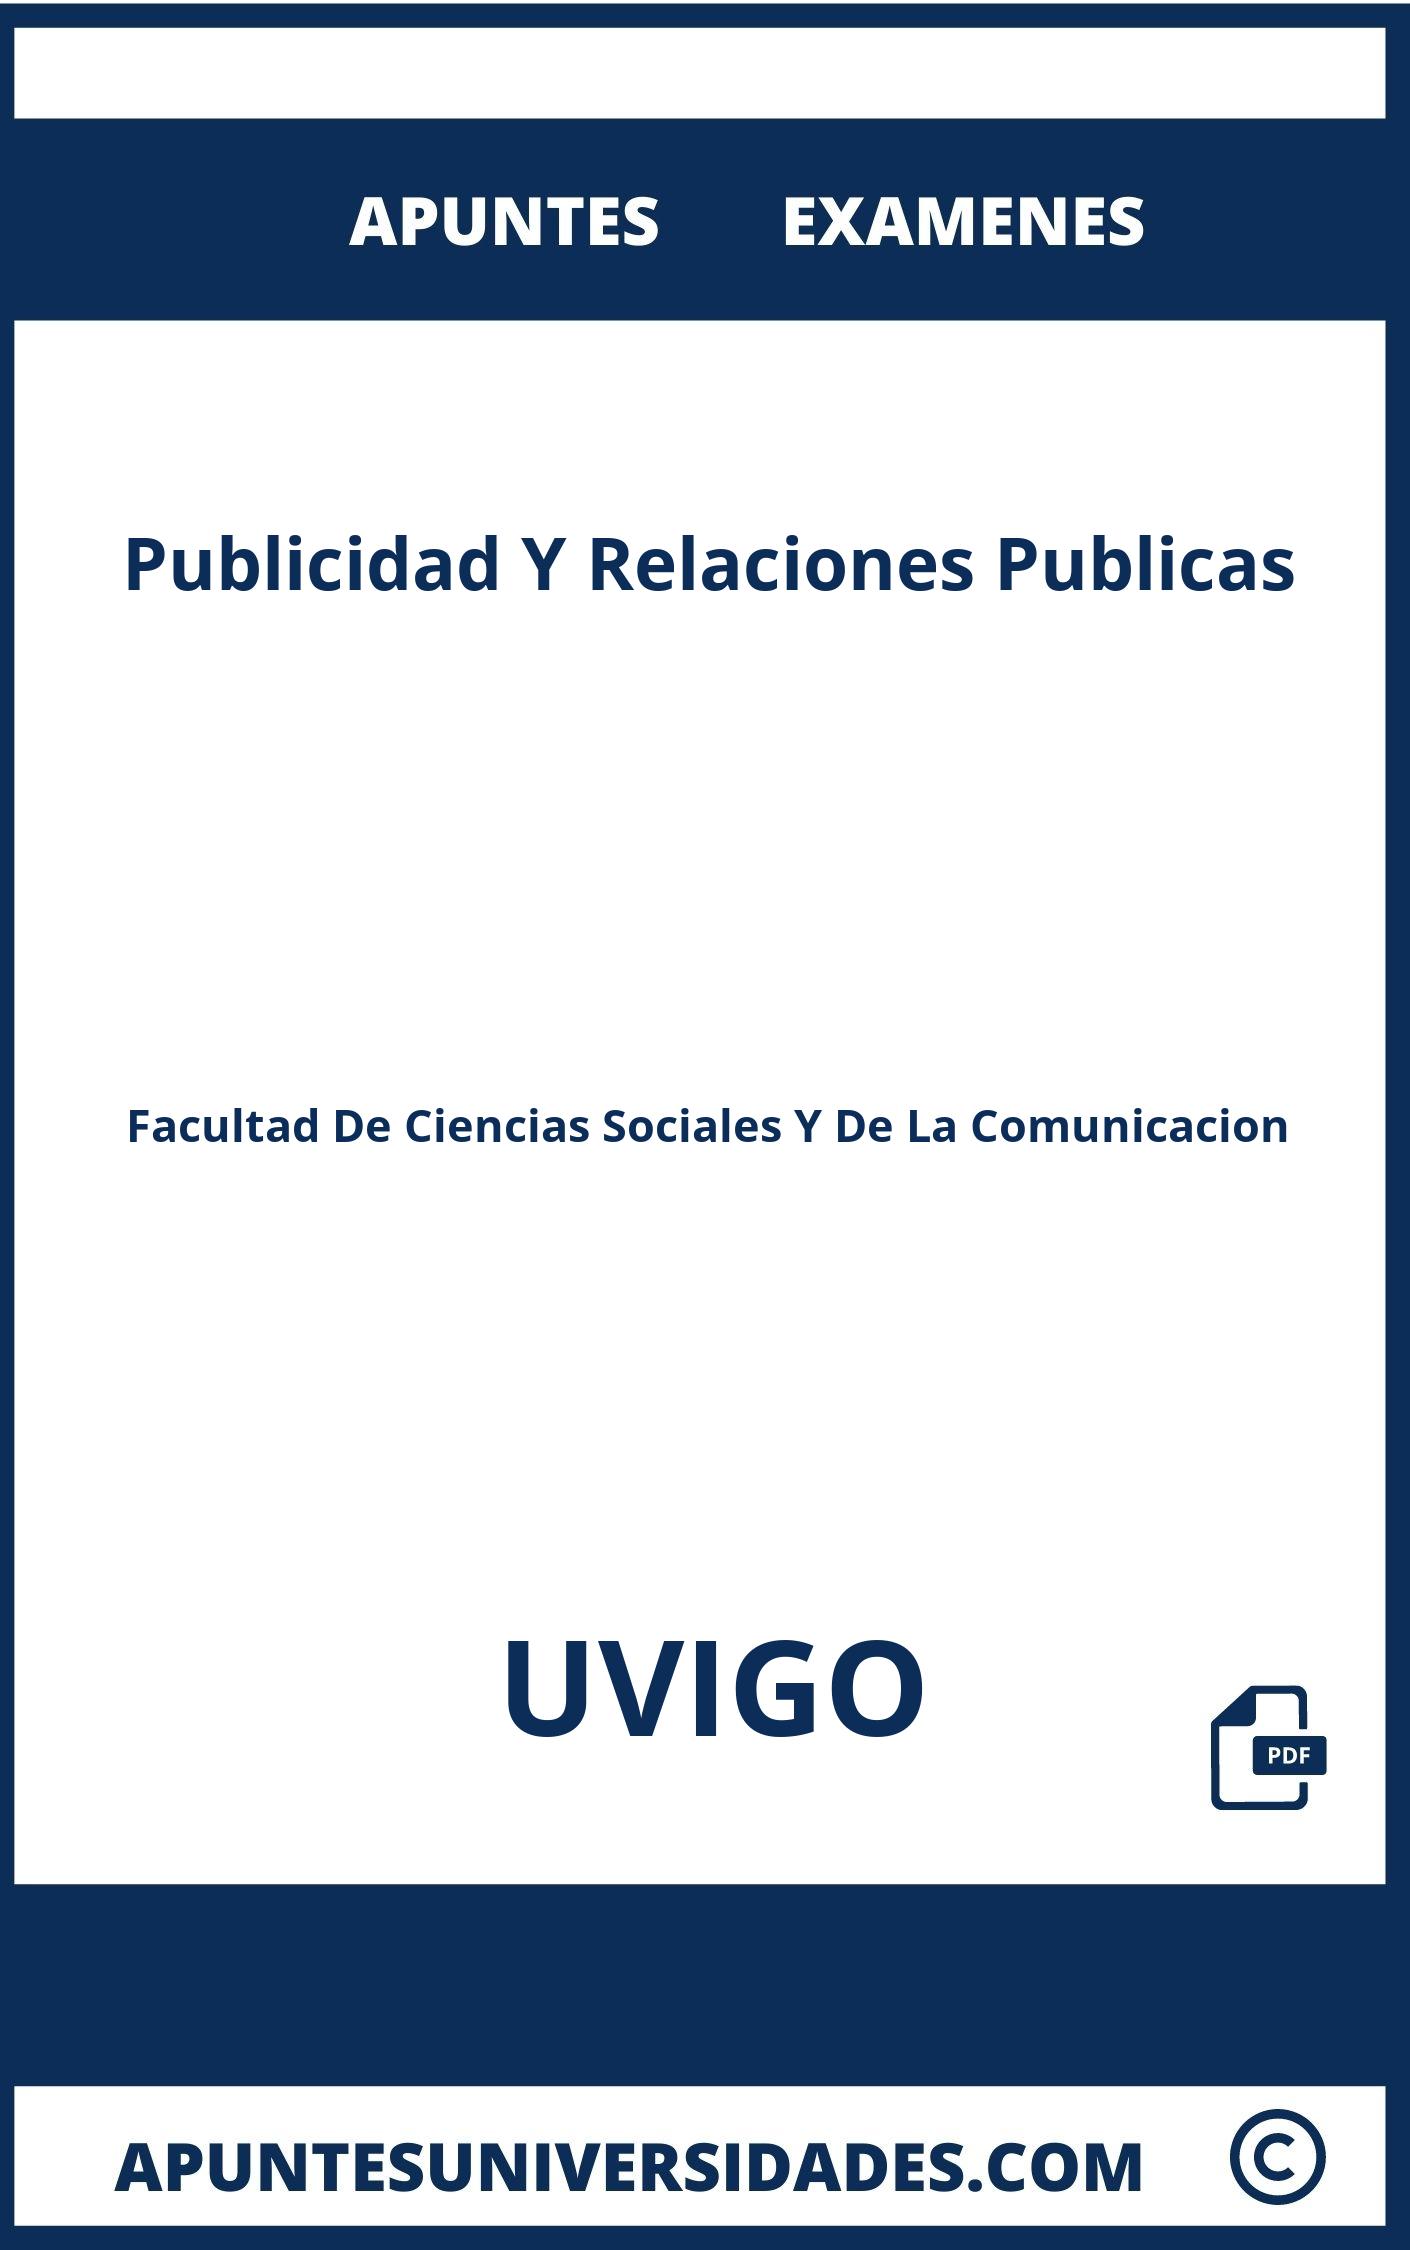 Examenes y Apuntes Publicidad Y Relaciones Publicas UVIGO